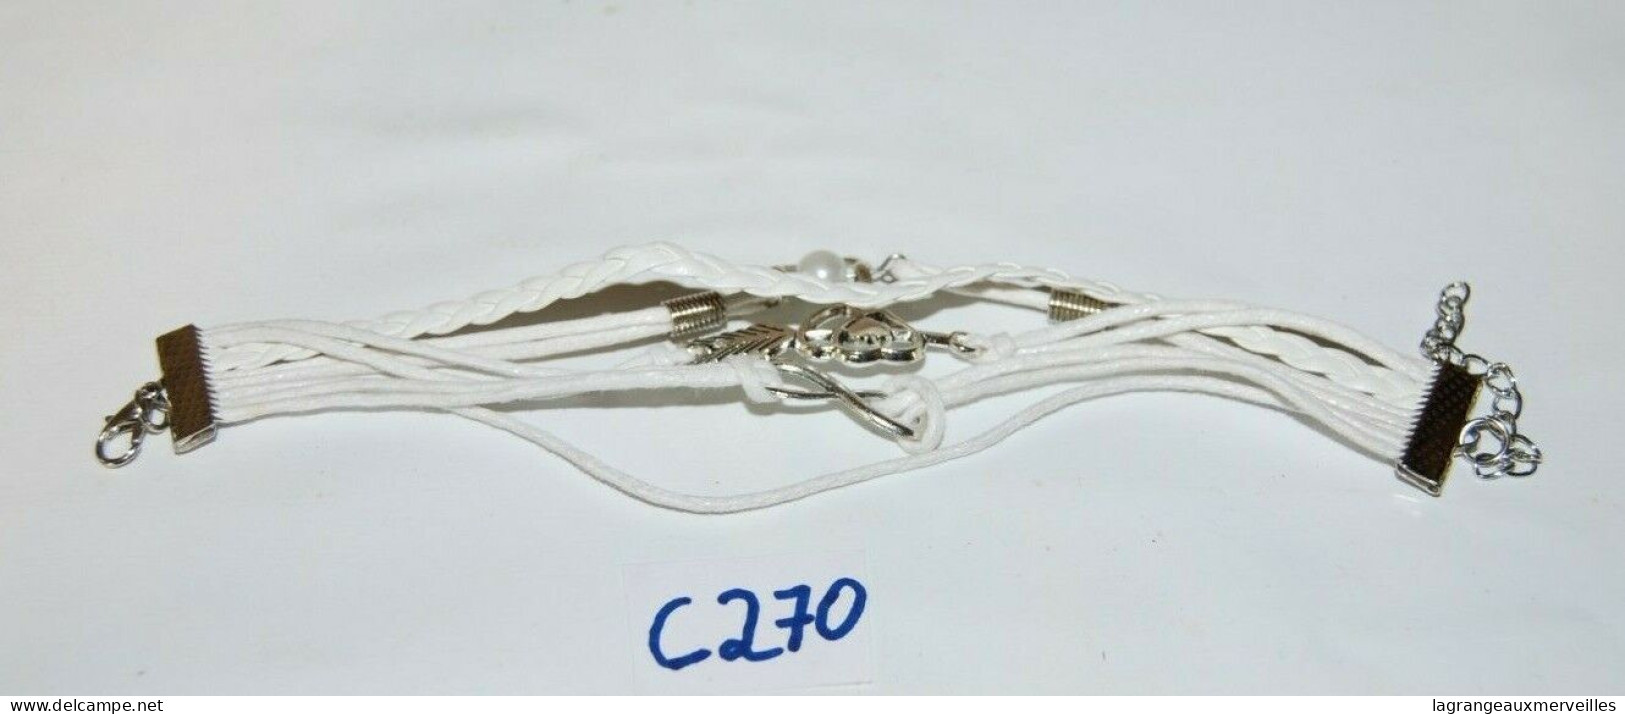 C270 Bijou De Fantaisie - Costume Jewelry - Kostuum Juwelen - Bracelet - Bracciali